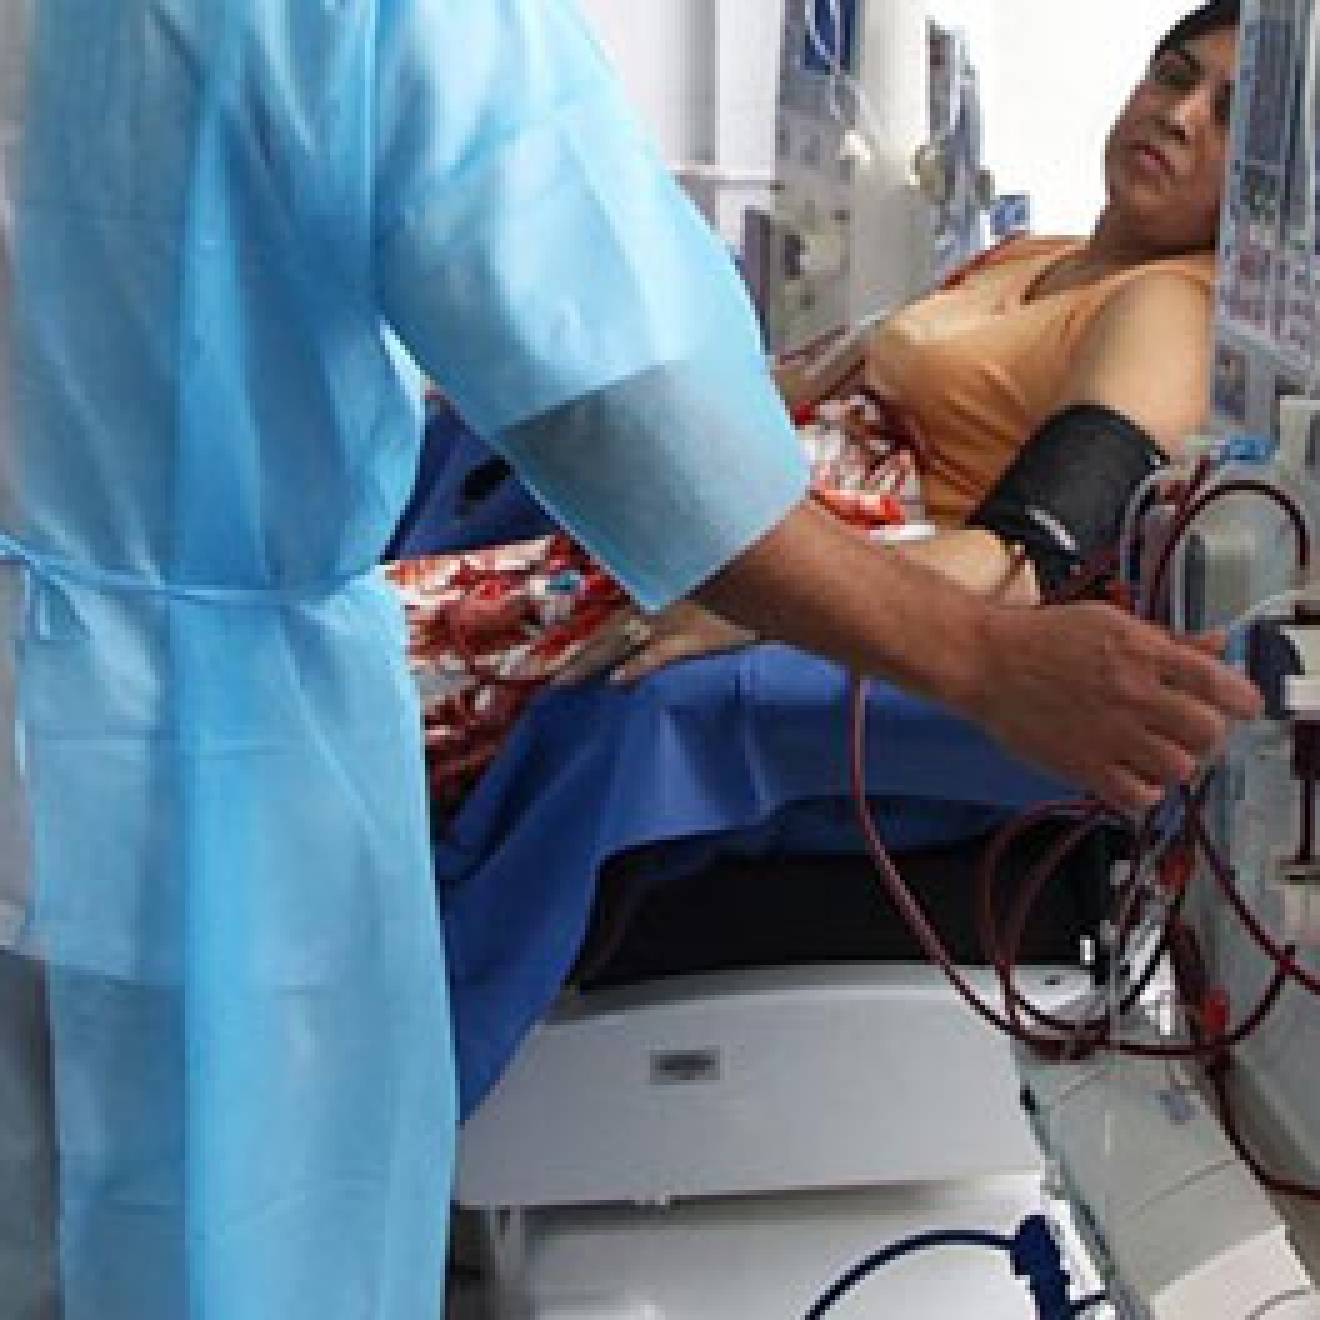 Nurse operating dialysis machine next to a woman